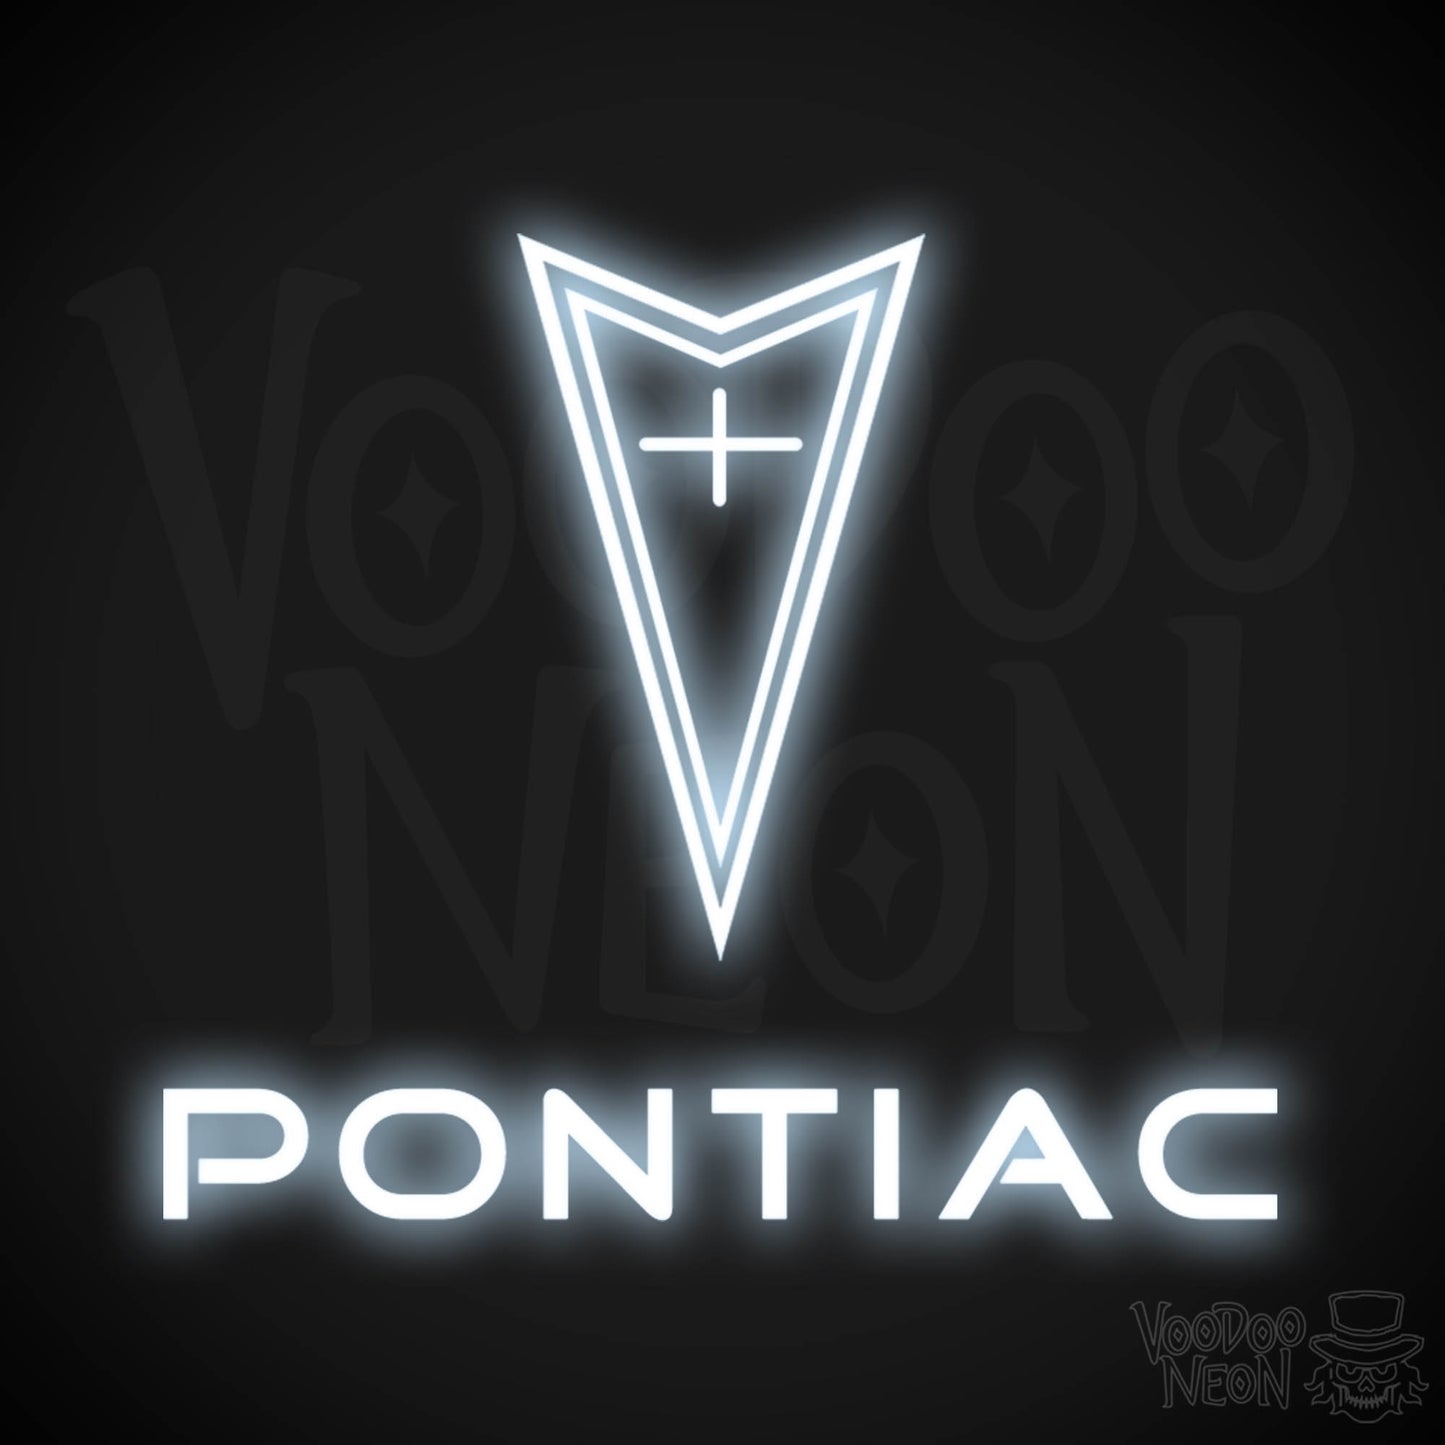 Pontiac Neon Sign - Pontiac Sign - Pontiac Decor - Wall Art - Color Cool White